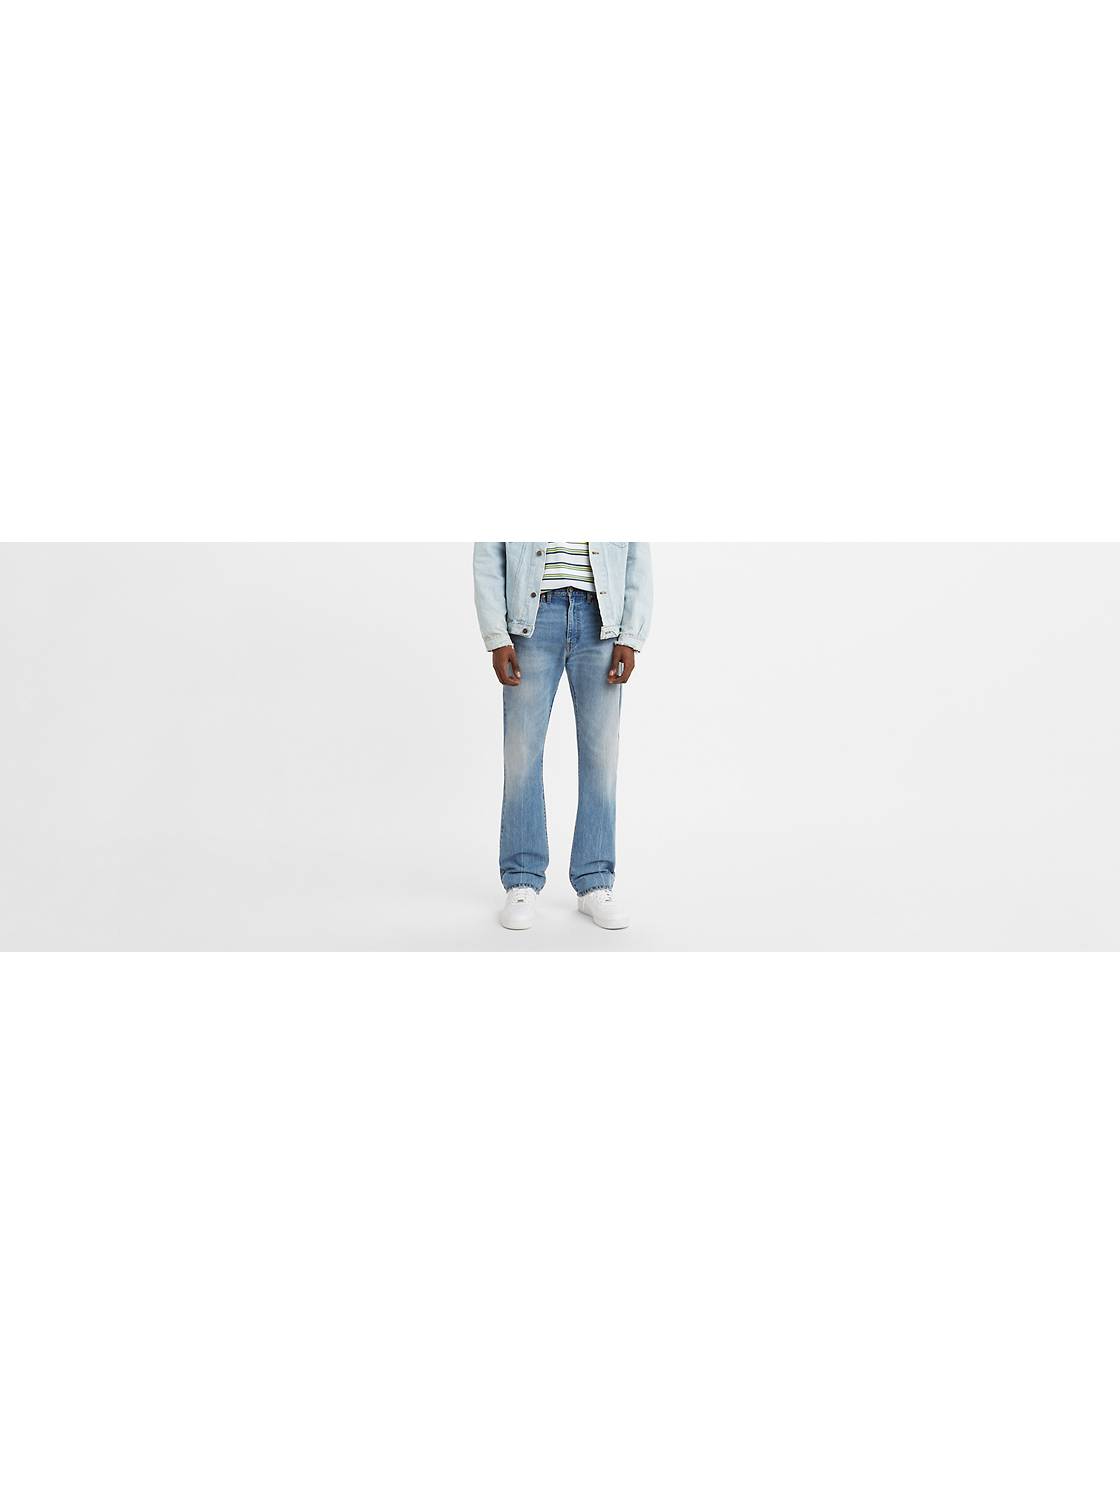 Men's Bootcut Jeans: Shop Bootcut Jeans for Men